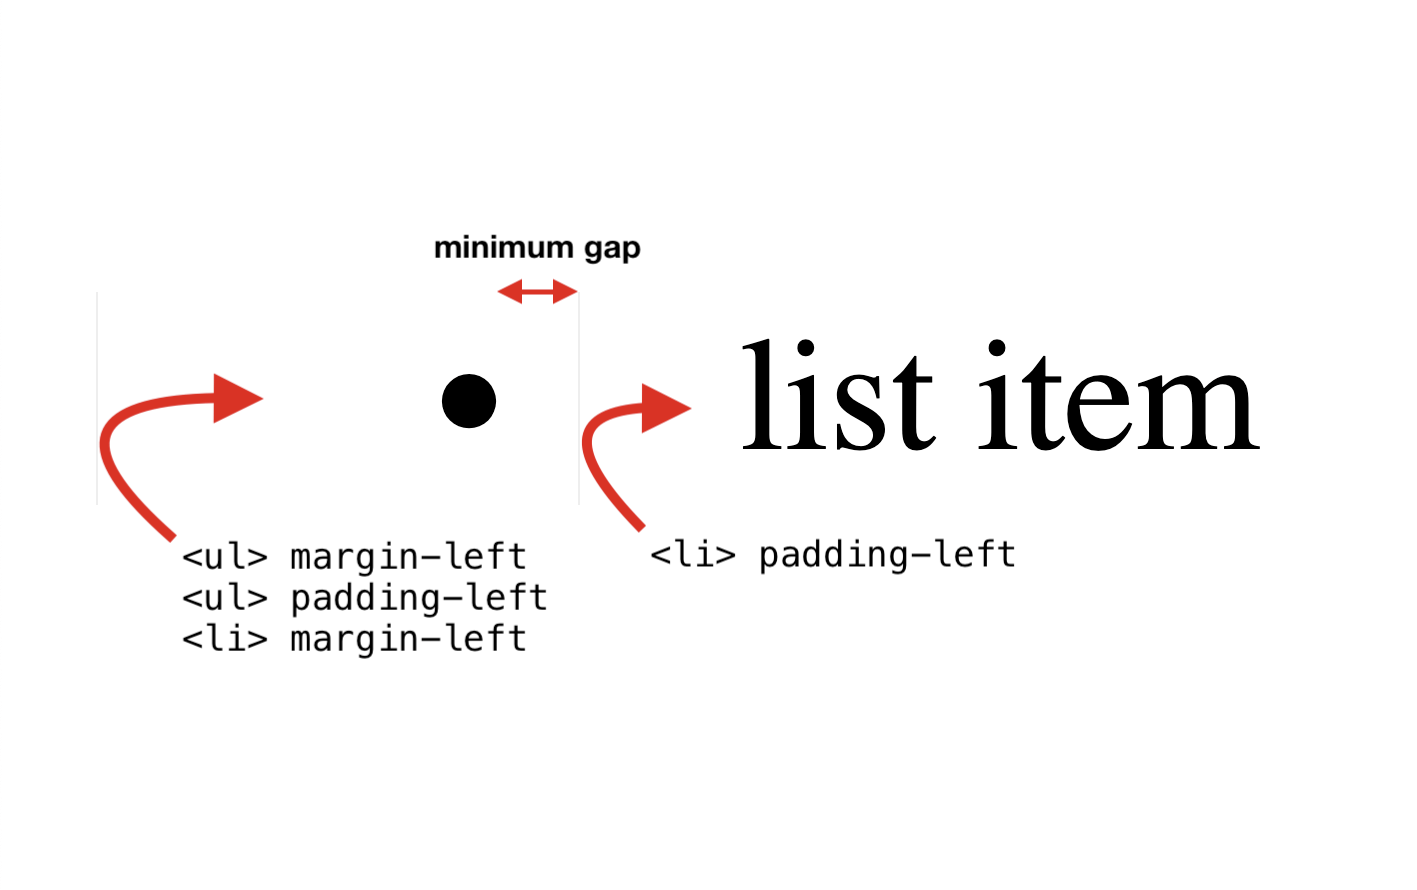 De tre första egenskaperna: UL-marginal-vänster, UL-stoppning-vänster, LI-marginal-vänster. Fjärde egenskapen: LI stoppning-vänster.